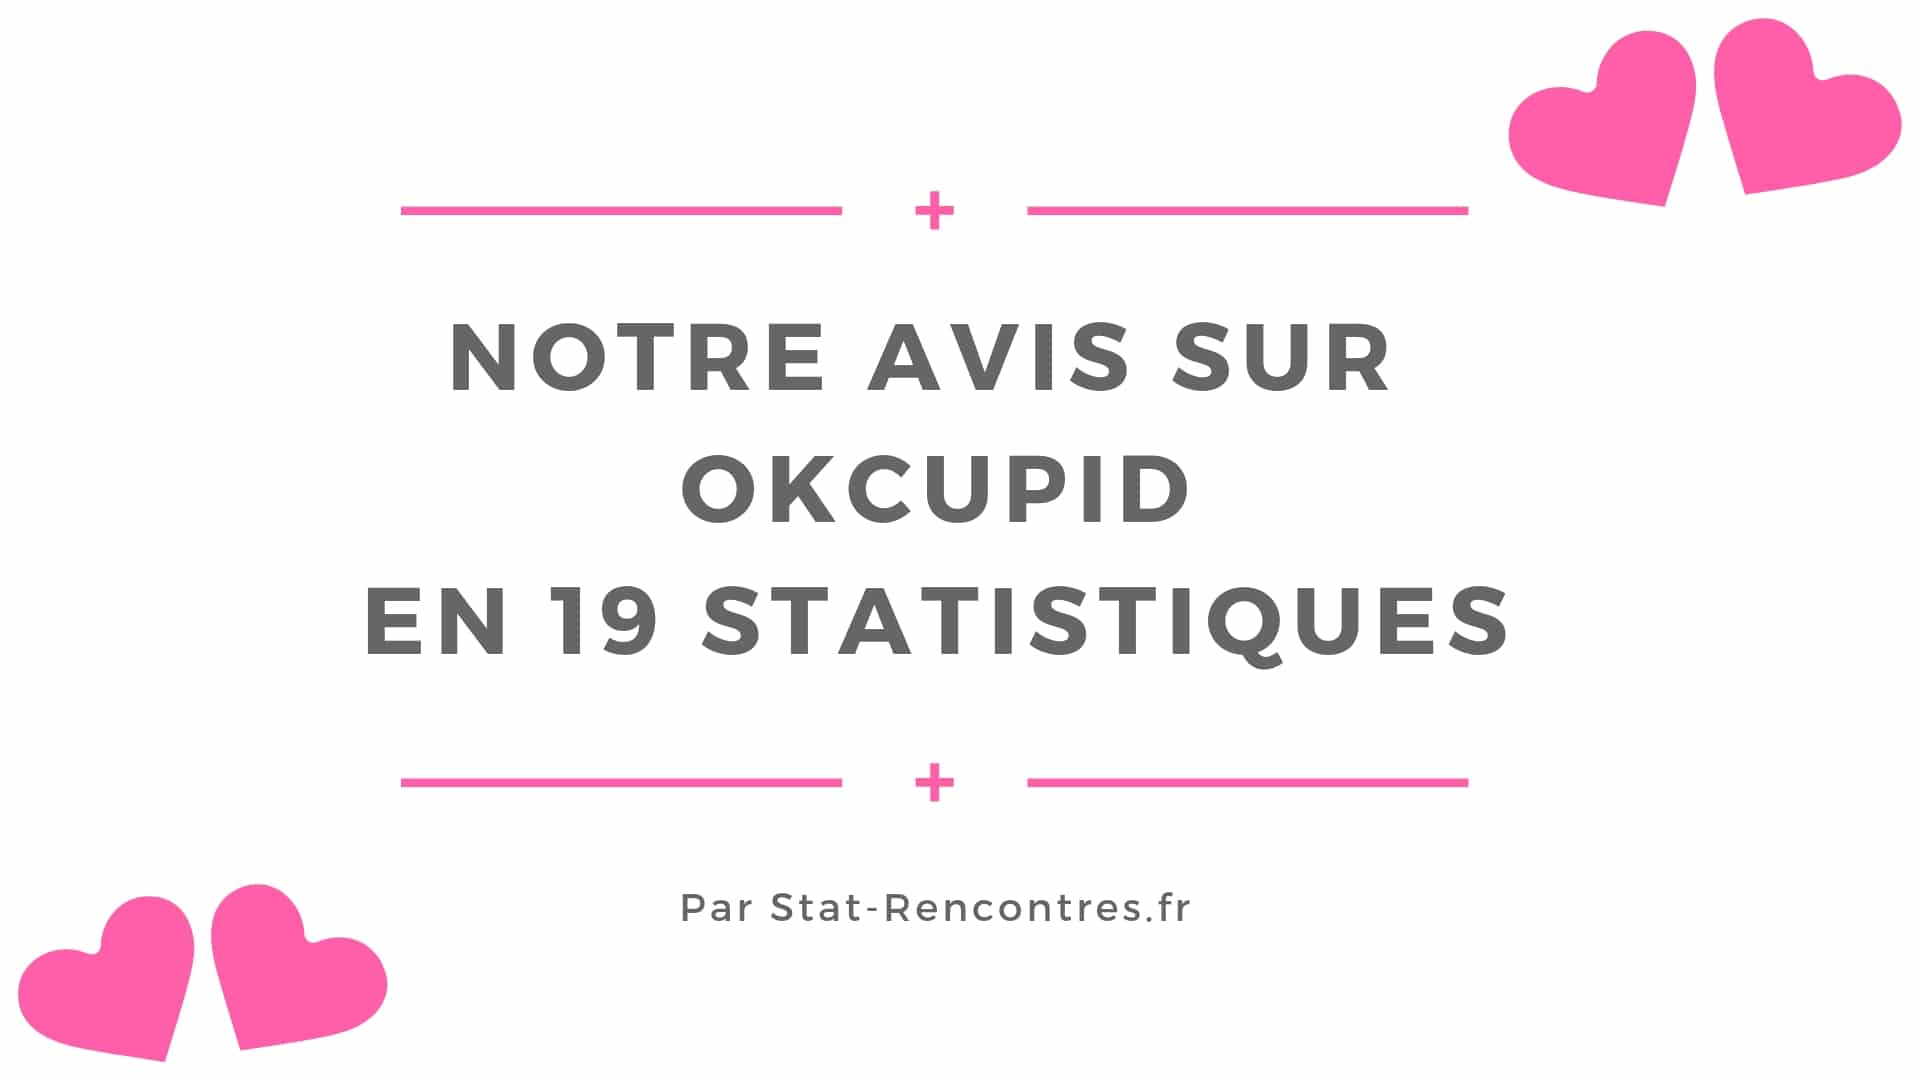 Avis sur OkCupid : Simple, efficace, mais pas encore traduit en français !